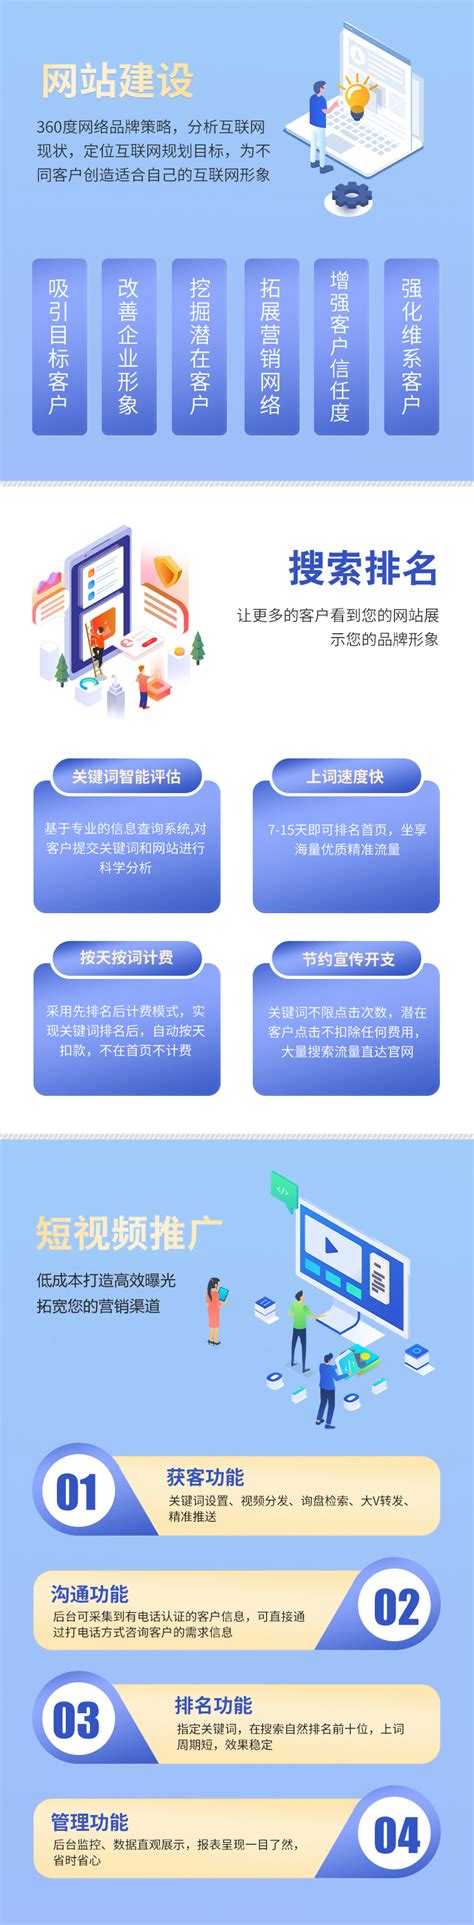 浙江营销小程序网站建设咨询热线